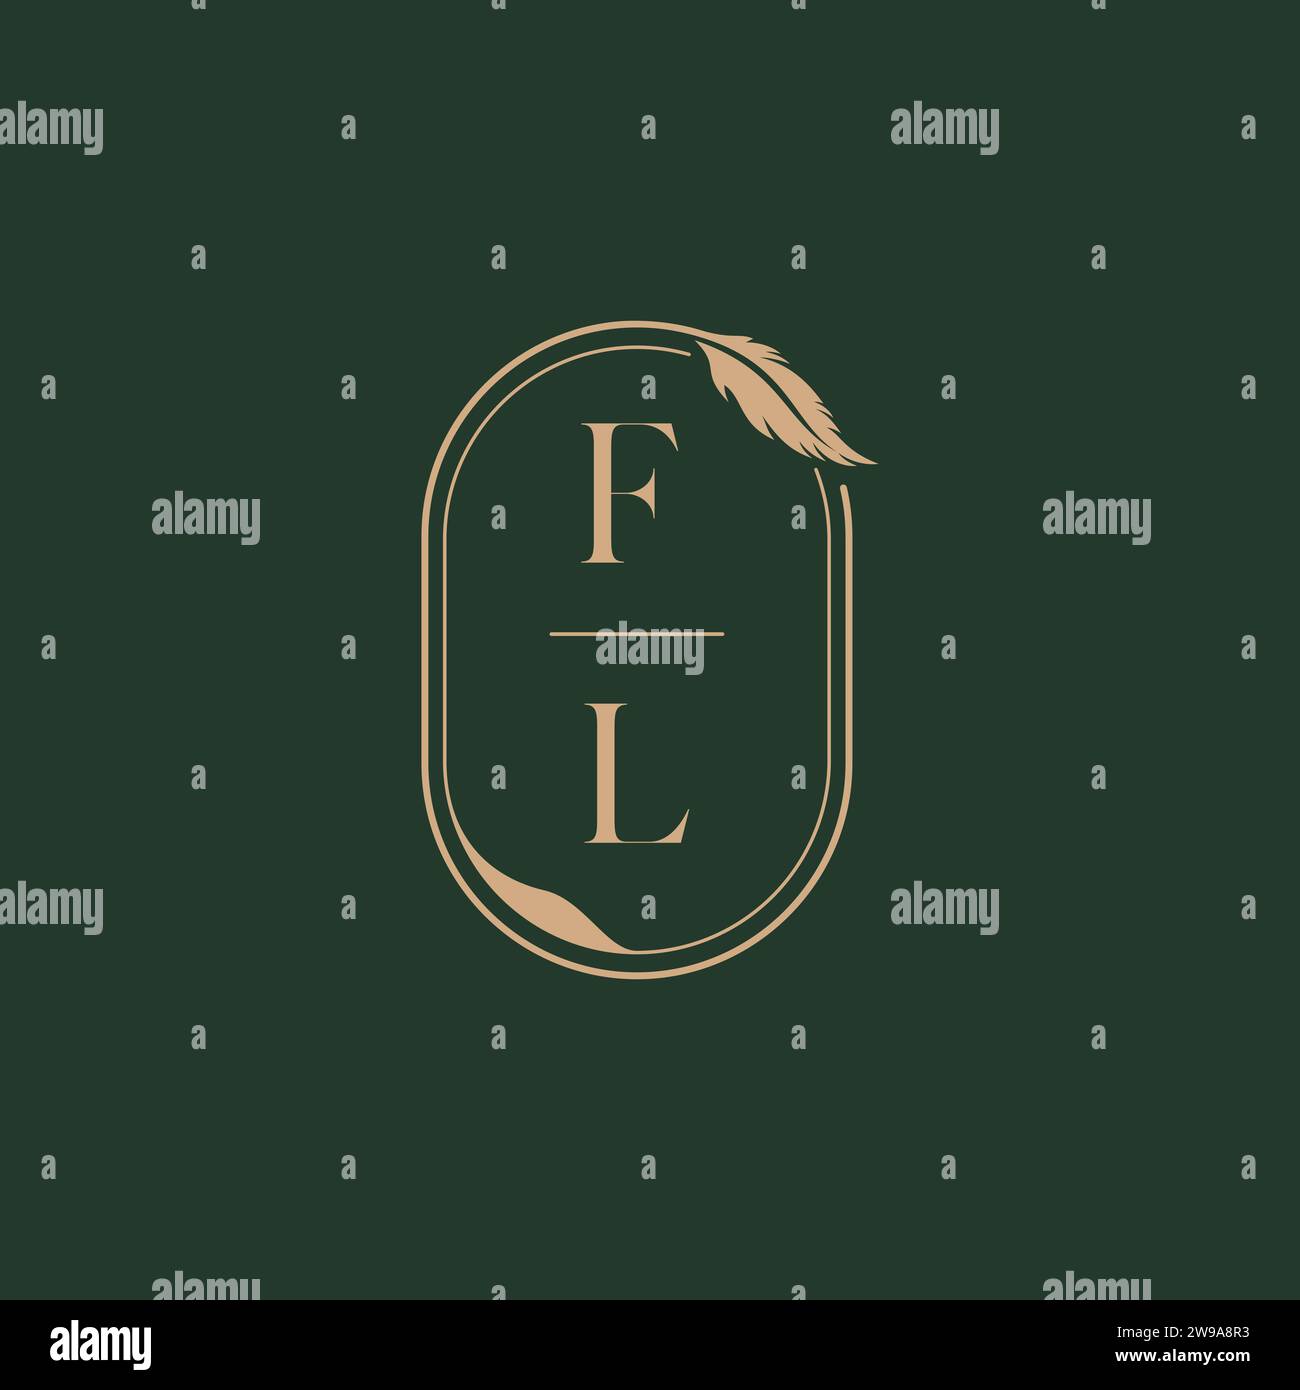 FL feather concept wedding monogram logo design ideas as inspiration Stock Vector